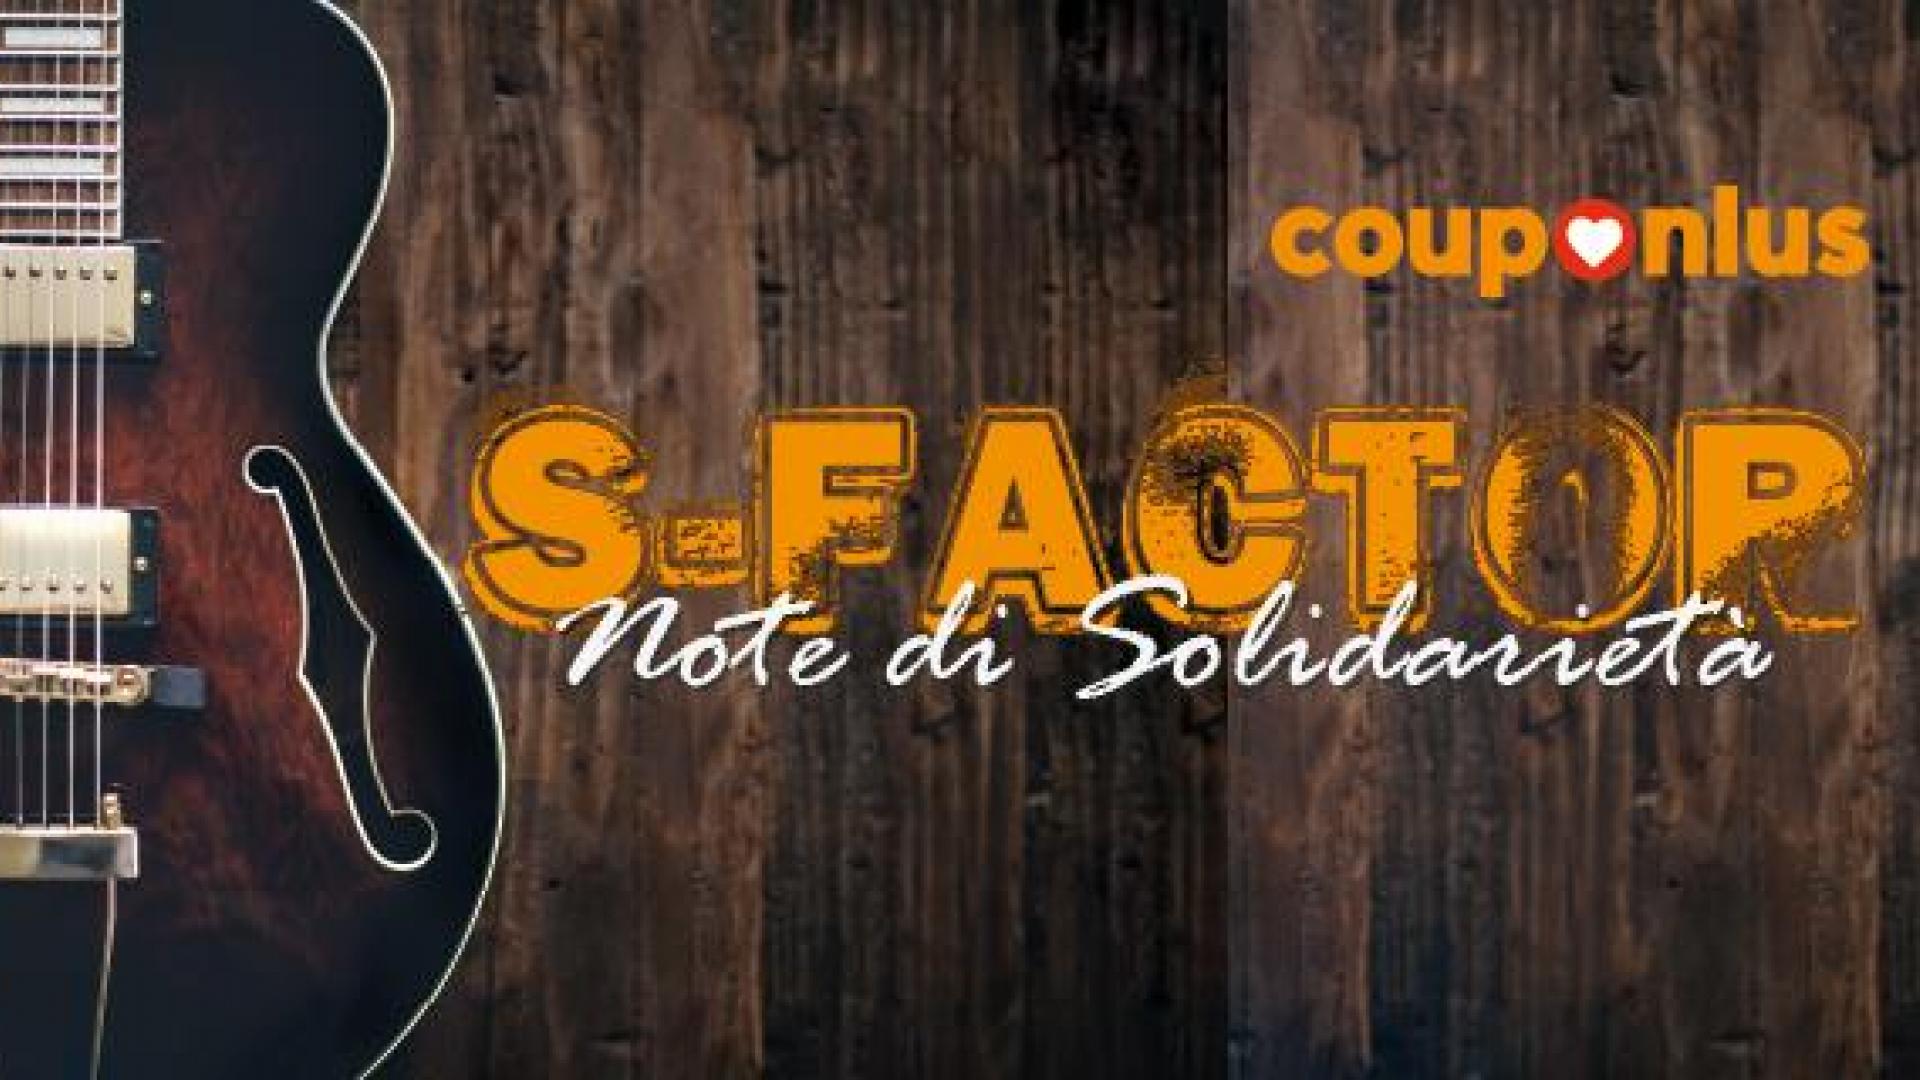 S-FACTOR, locandina concorso musicale per le scuole di Couponlus